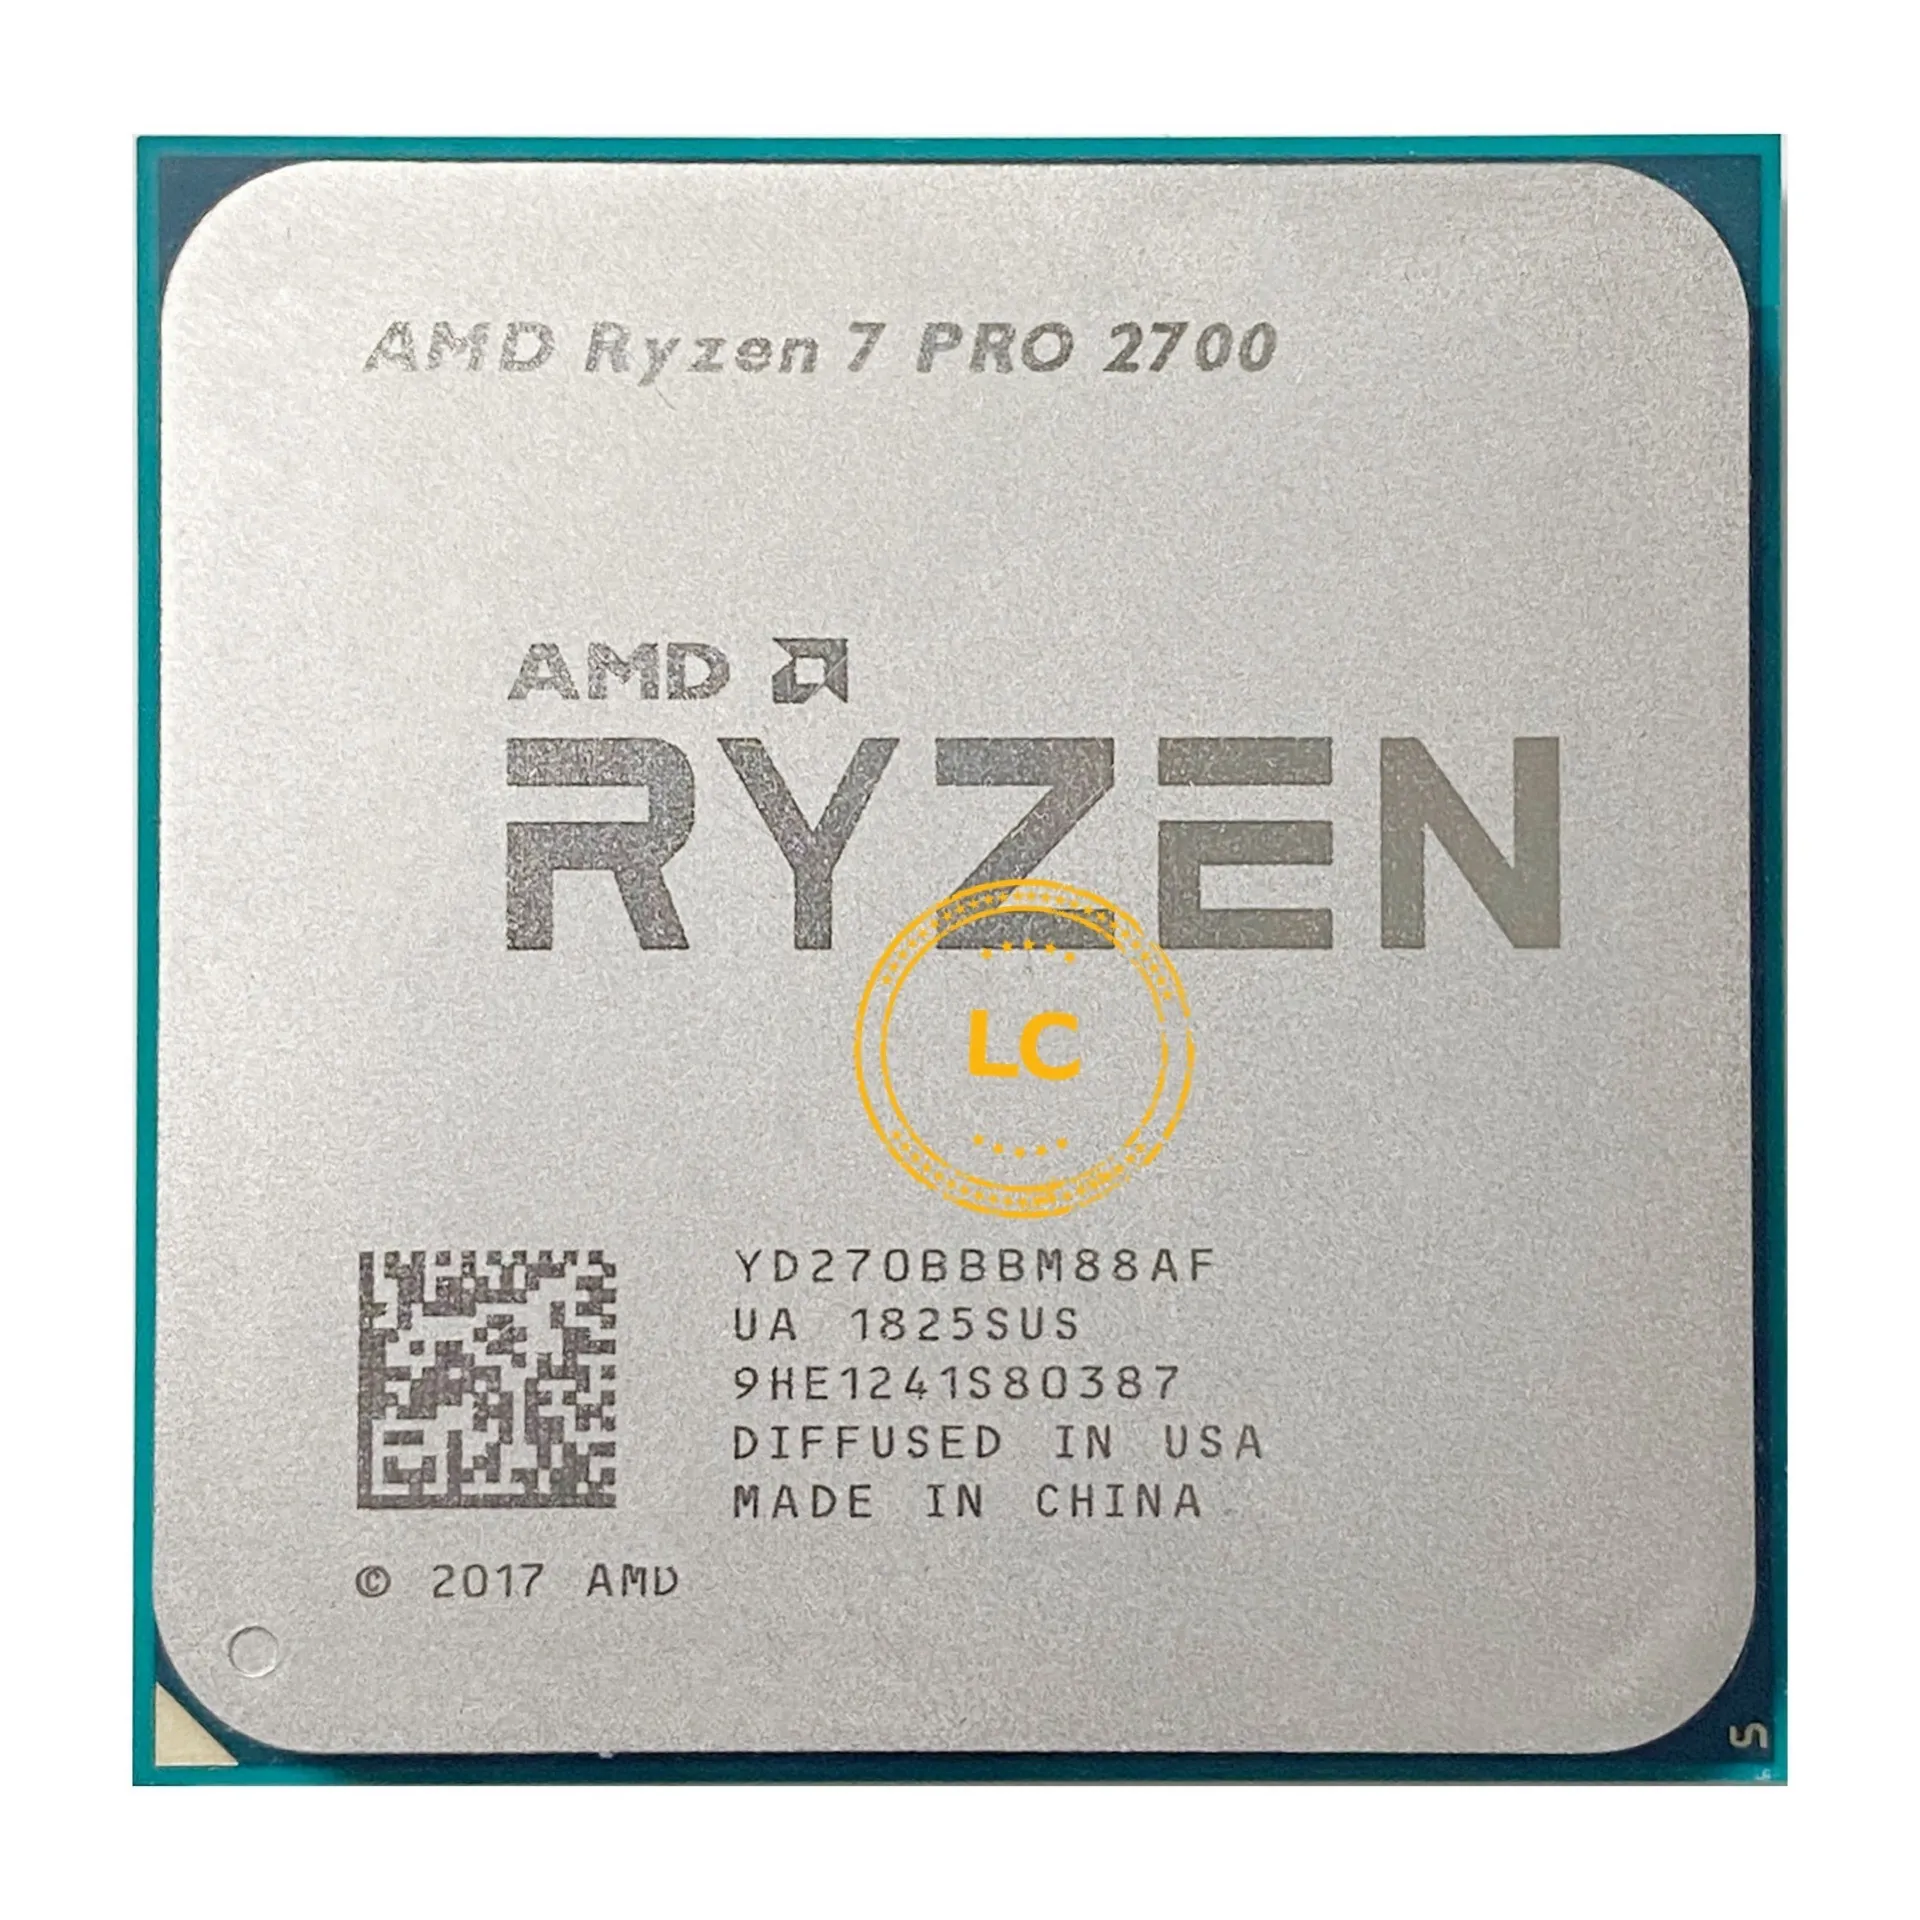 AMD RYZEN Processor 7 Pro 2700 R7 2700 3.2 GHz, 8-núcleo, 16 hilos, 16 m, 65W, Conecte YD270BBBM888AF AM4 Procesadores CPU PROCESORES POR MAYOR ANTES DEL ENVÍO